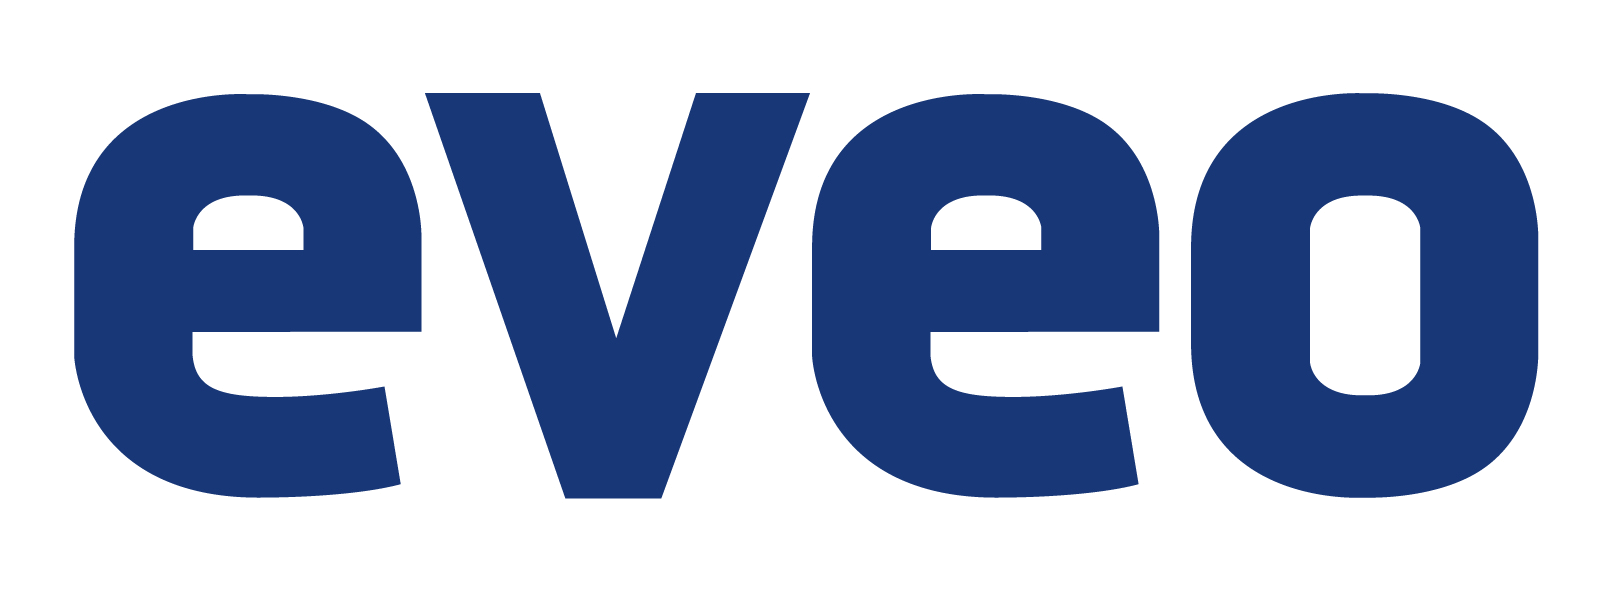 Integracja z systemem URVE Smart Office firmy Eveo